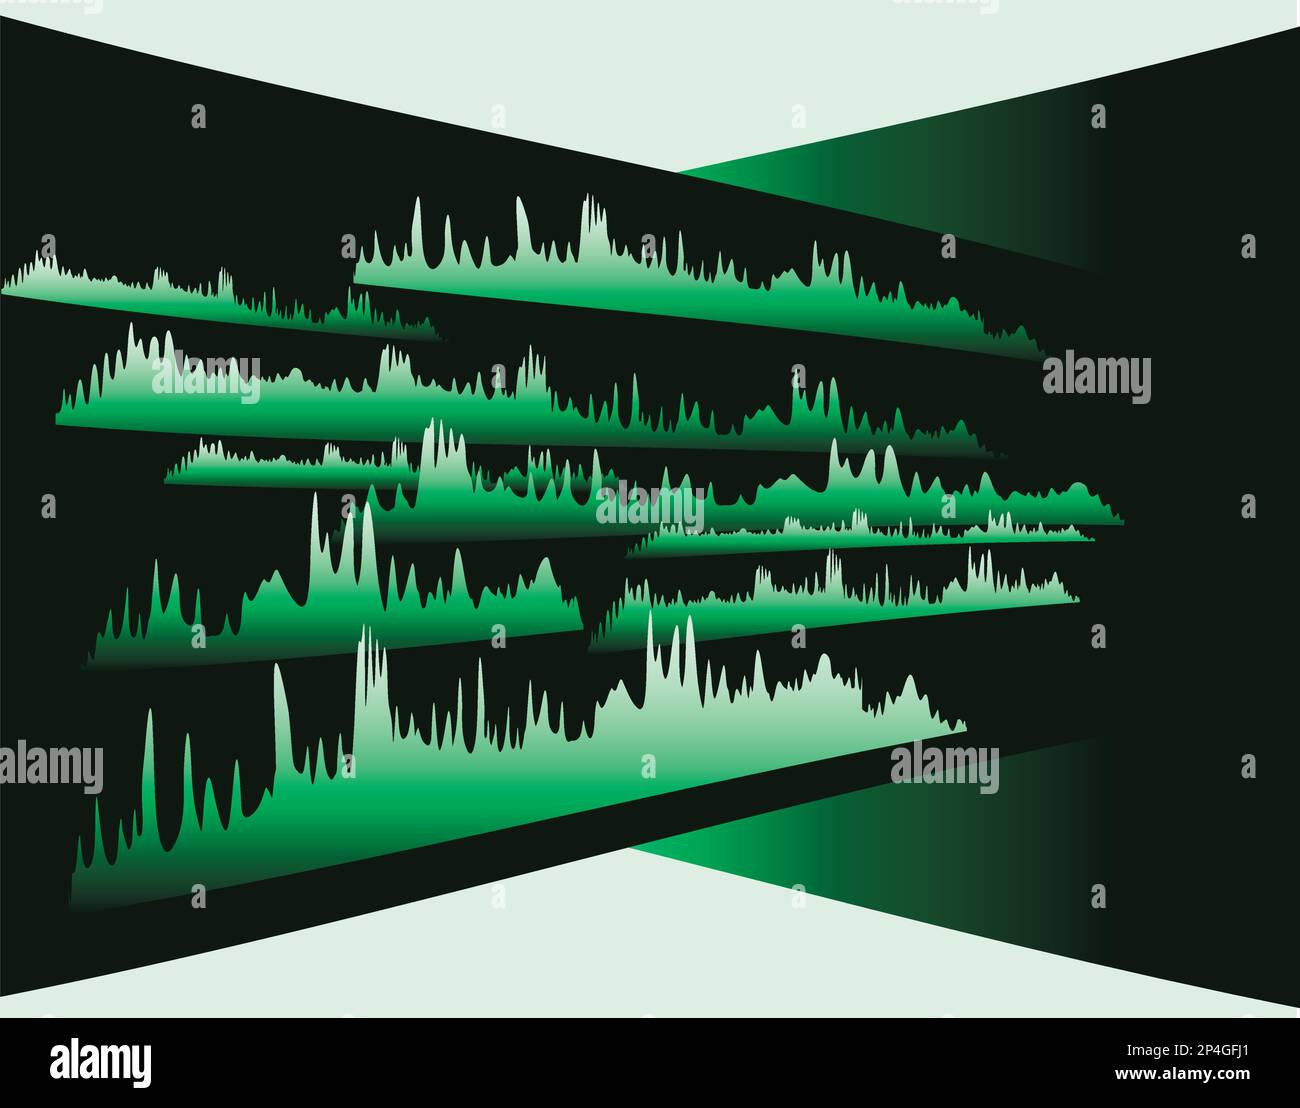 Égaliseur de musique sur fond noir. Soundwave en vert. illustration vectorielle abstraite modifiable Illustration de Vecteur